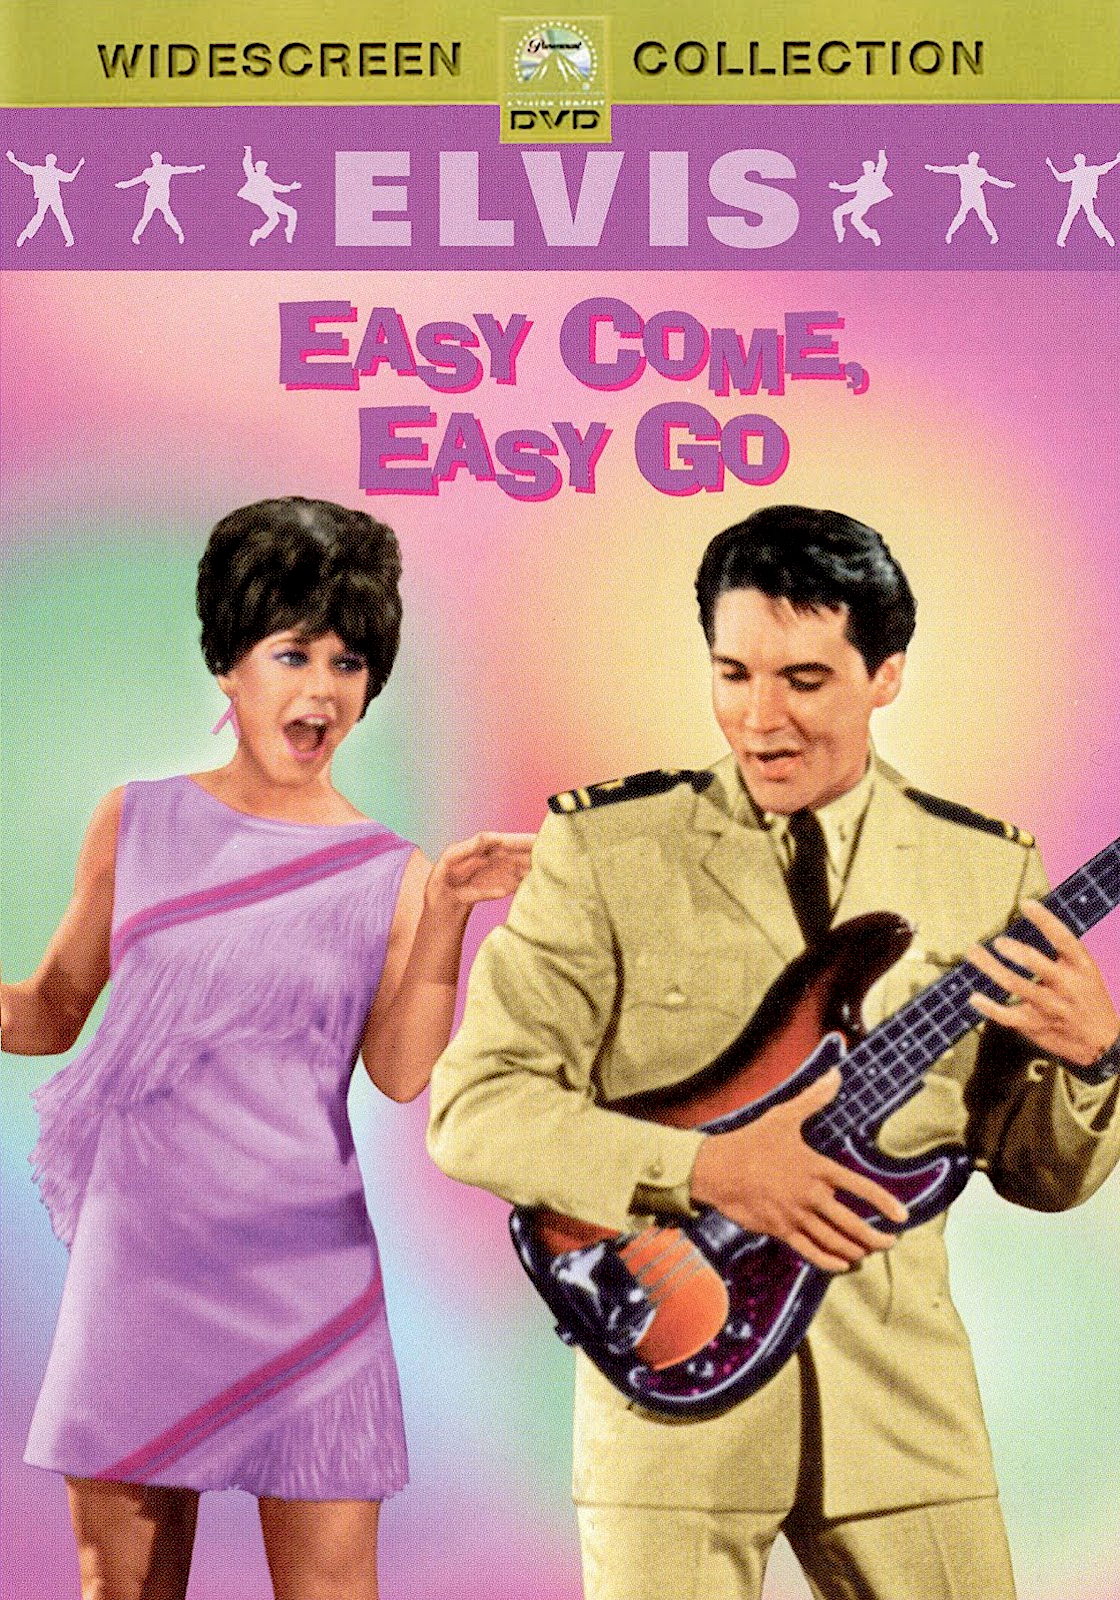 Легко приходит легко уходит. Easy come easy go. Постеры к фильму легко пришло,легко ушло 1967. Легко пришло легко ушло.